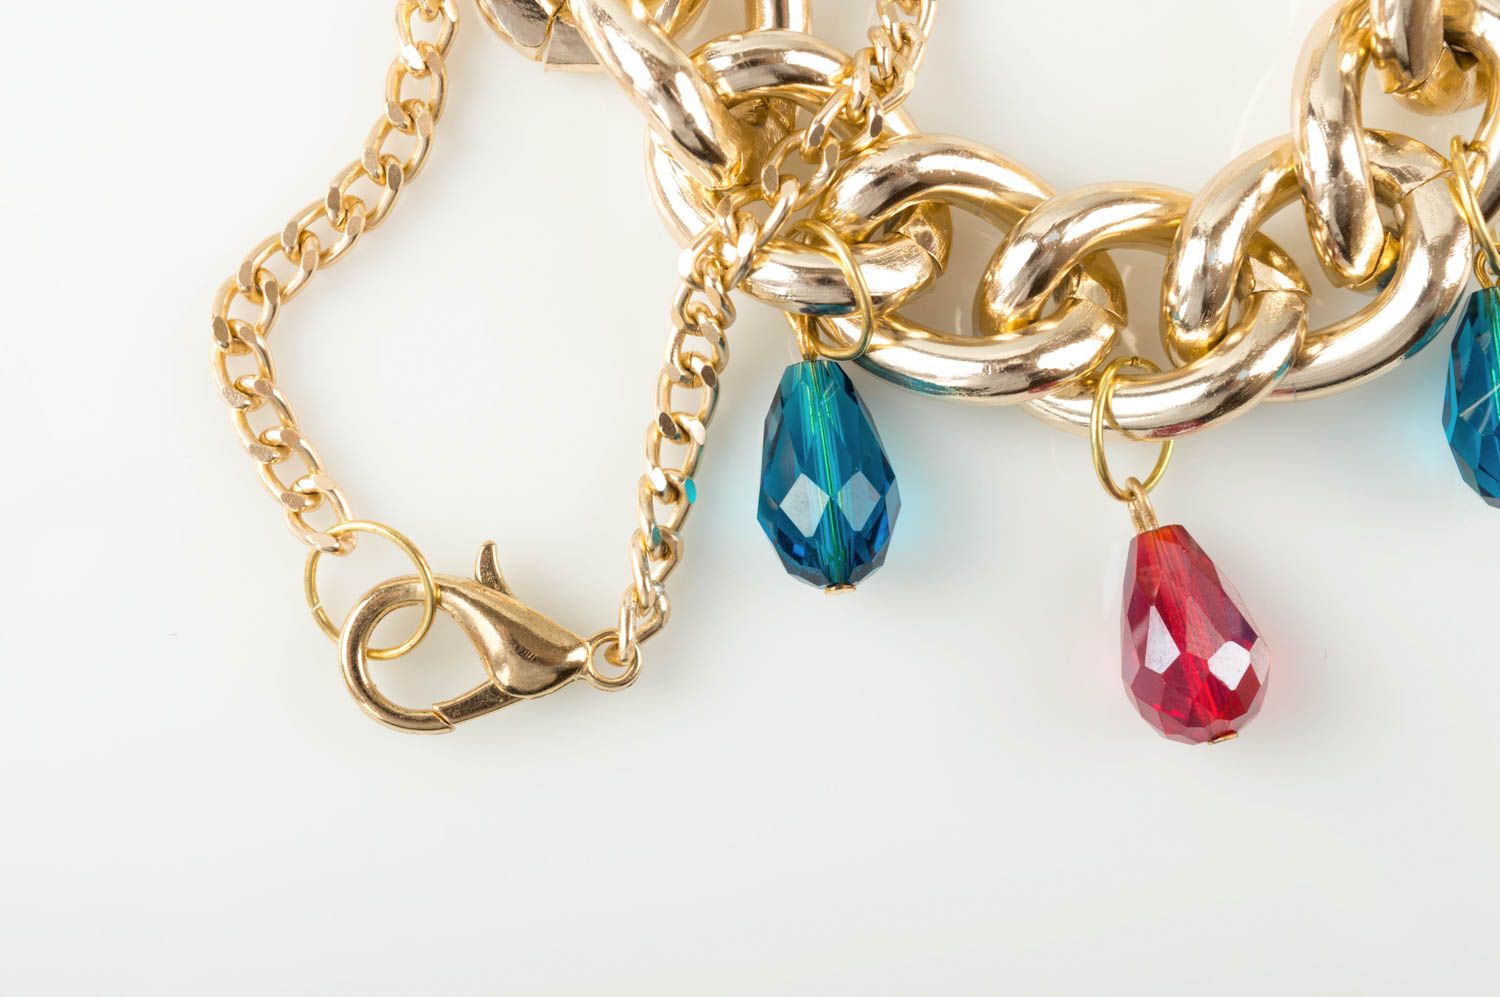 Handmade beautiful pendant stylish female necklace jewelry made of glass photo 4